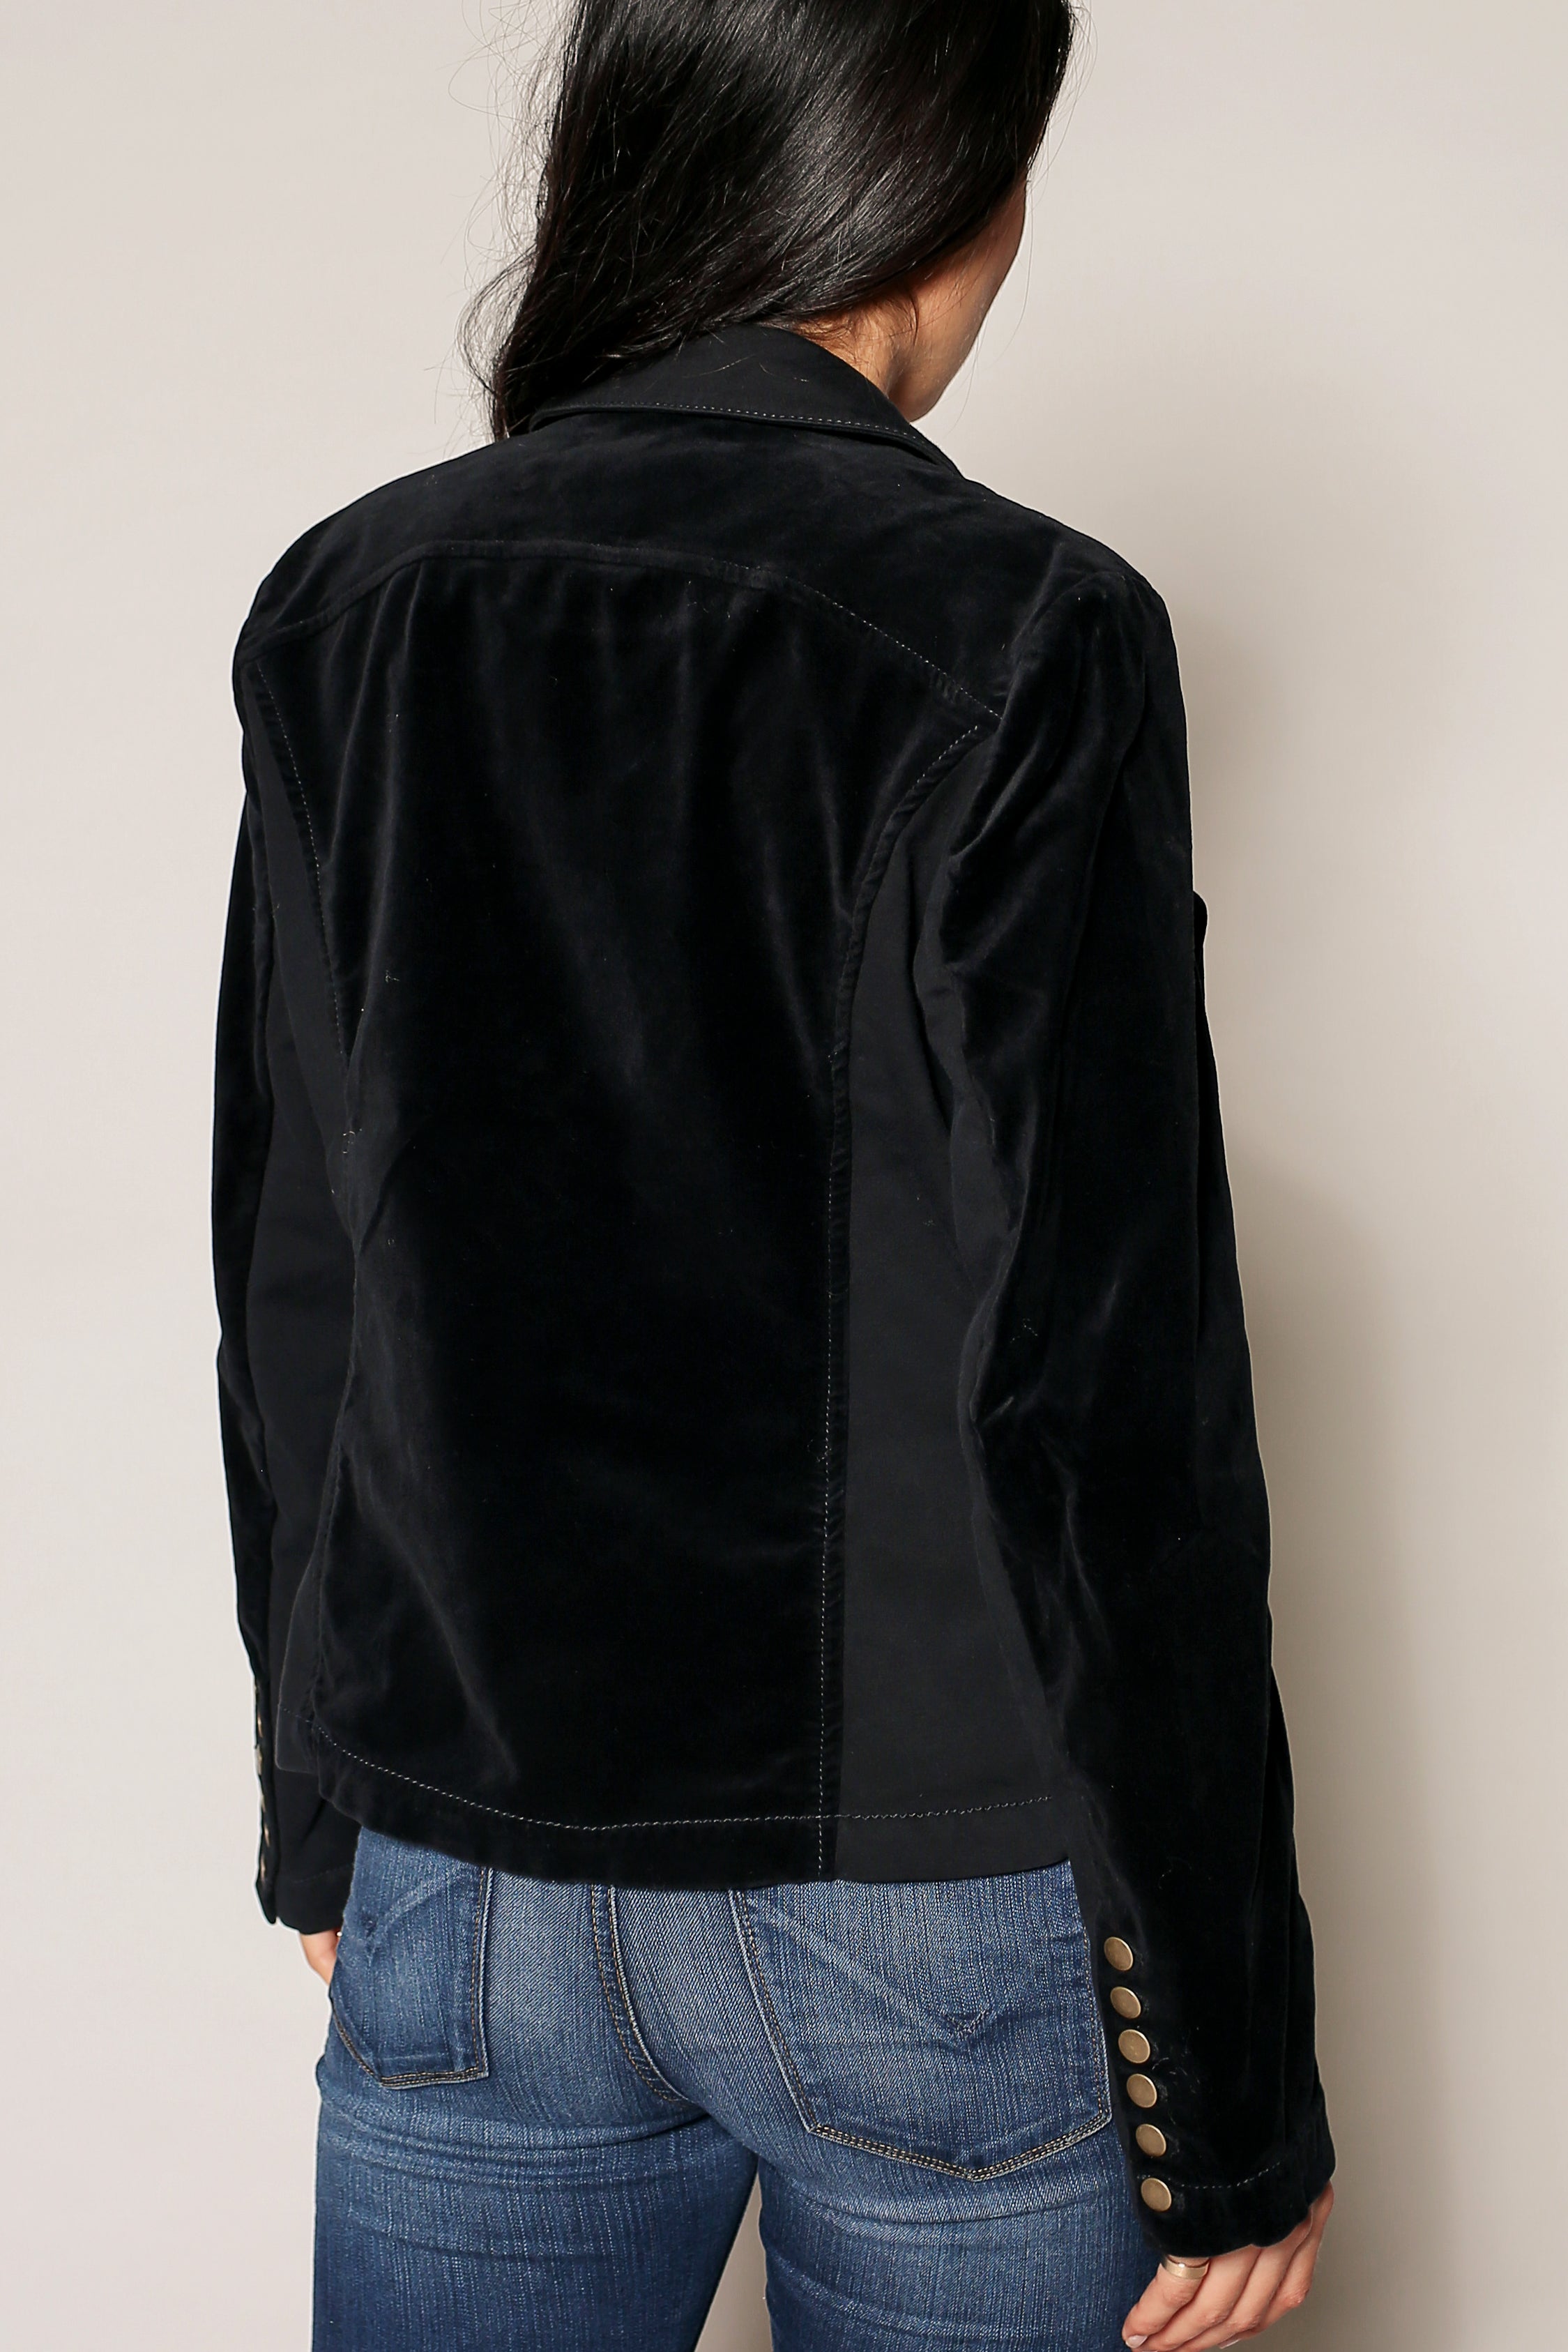 Galleria Velvet Blazer Jacket - Marrakech Clothing